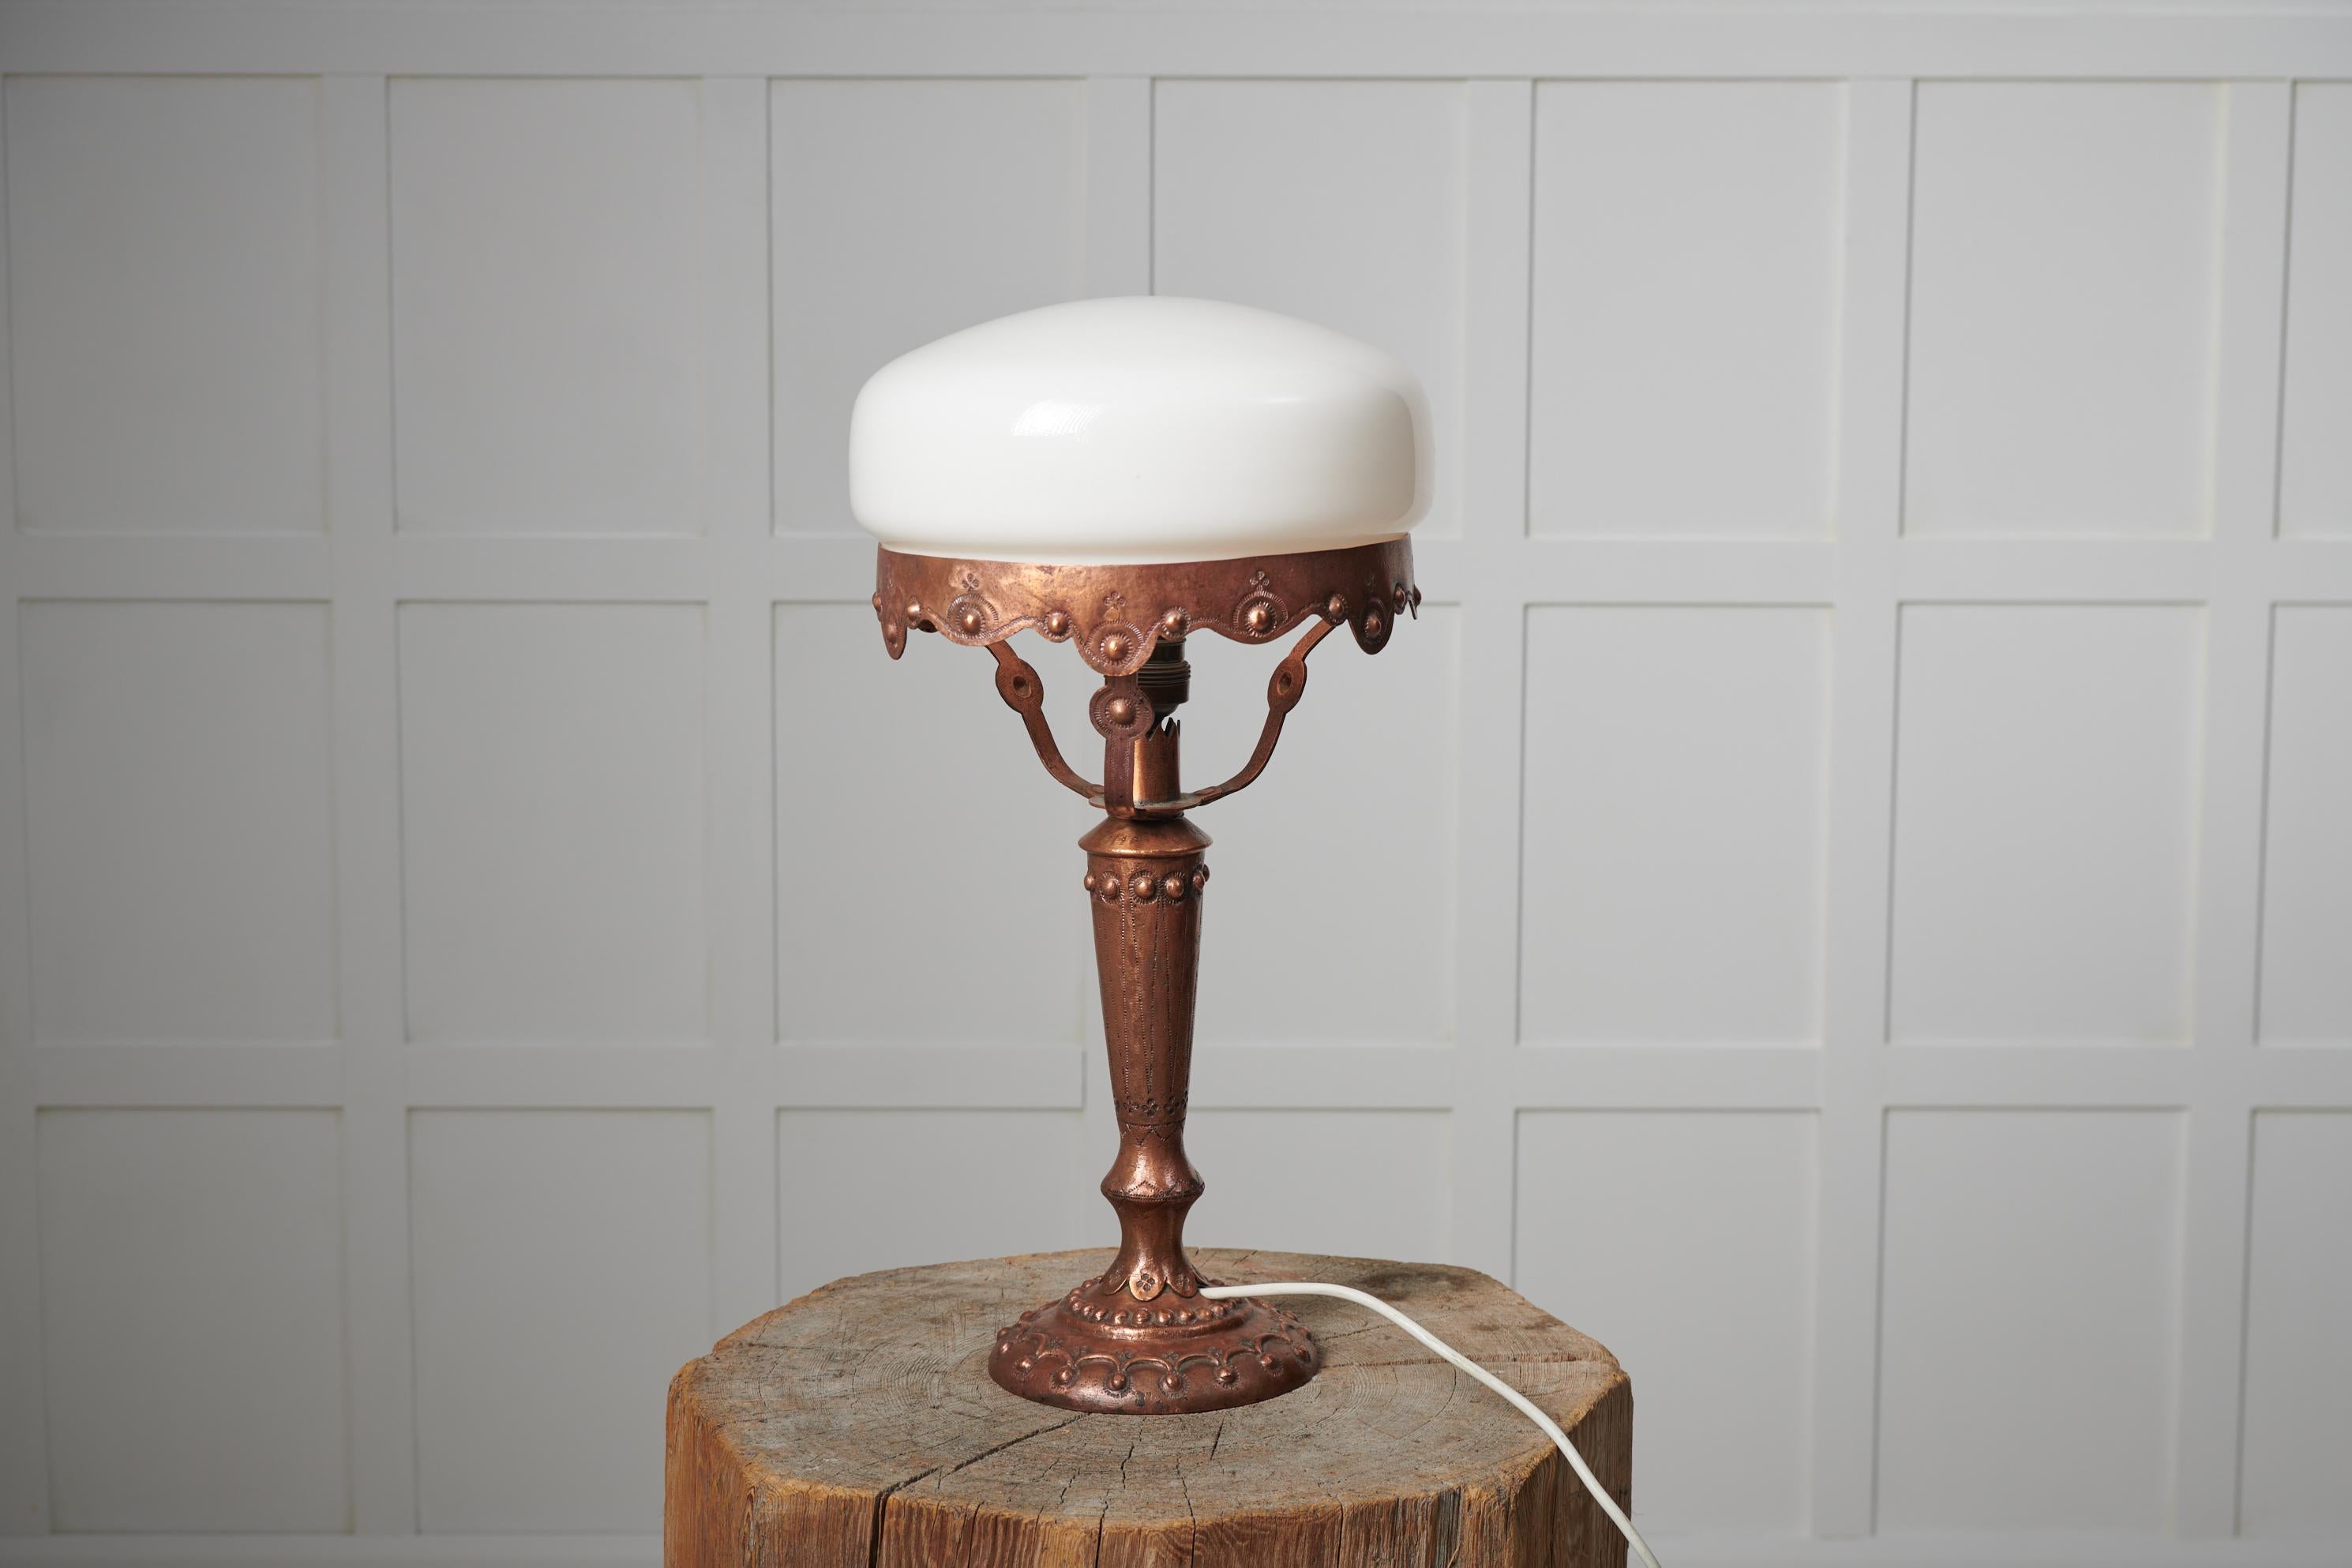 Lampe suédoise art nouveau des années 1920. La lampe de table a une base fabriquée à la main en laiton massif avec décor. L'abat-jour est rond et réalisé en verre opalin blanc. Le luminaire est en bon état vintage avec quelques traces mineures